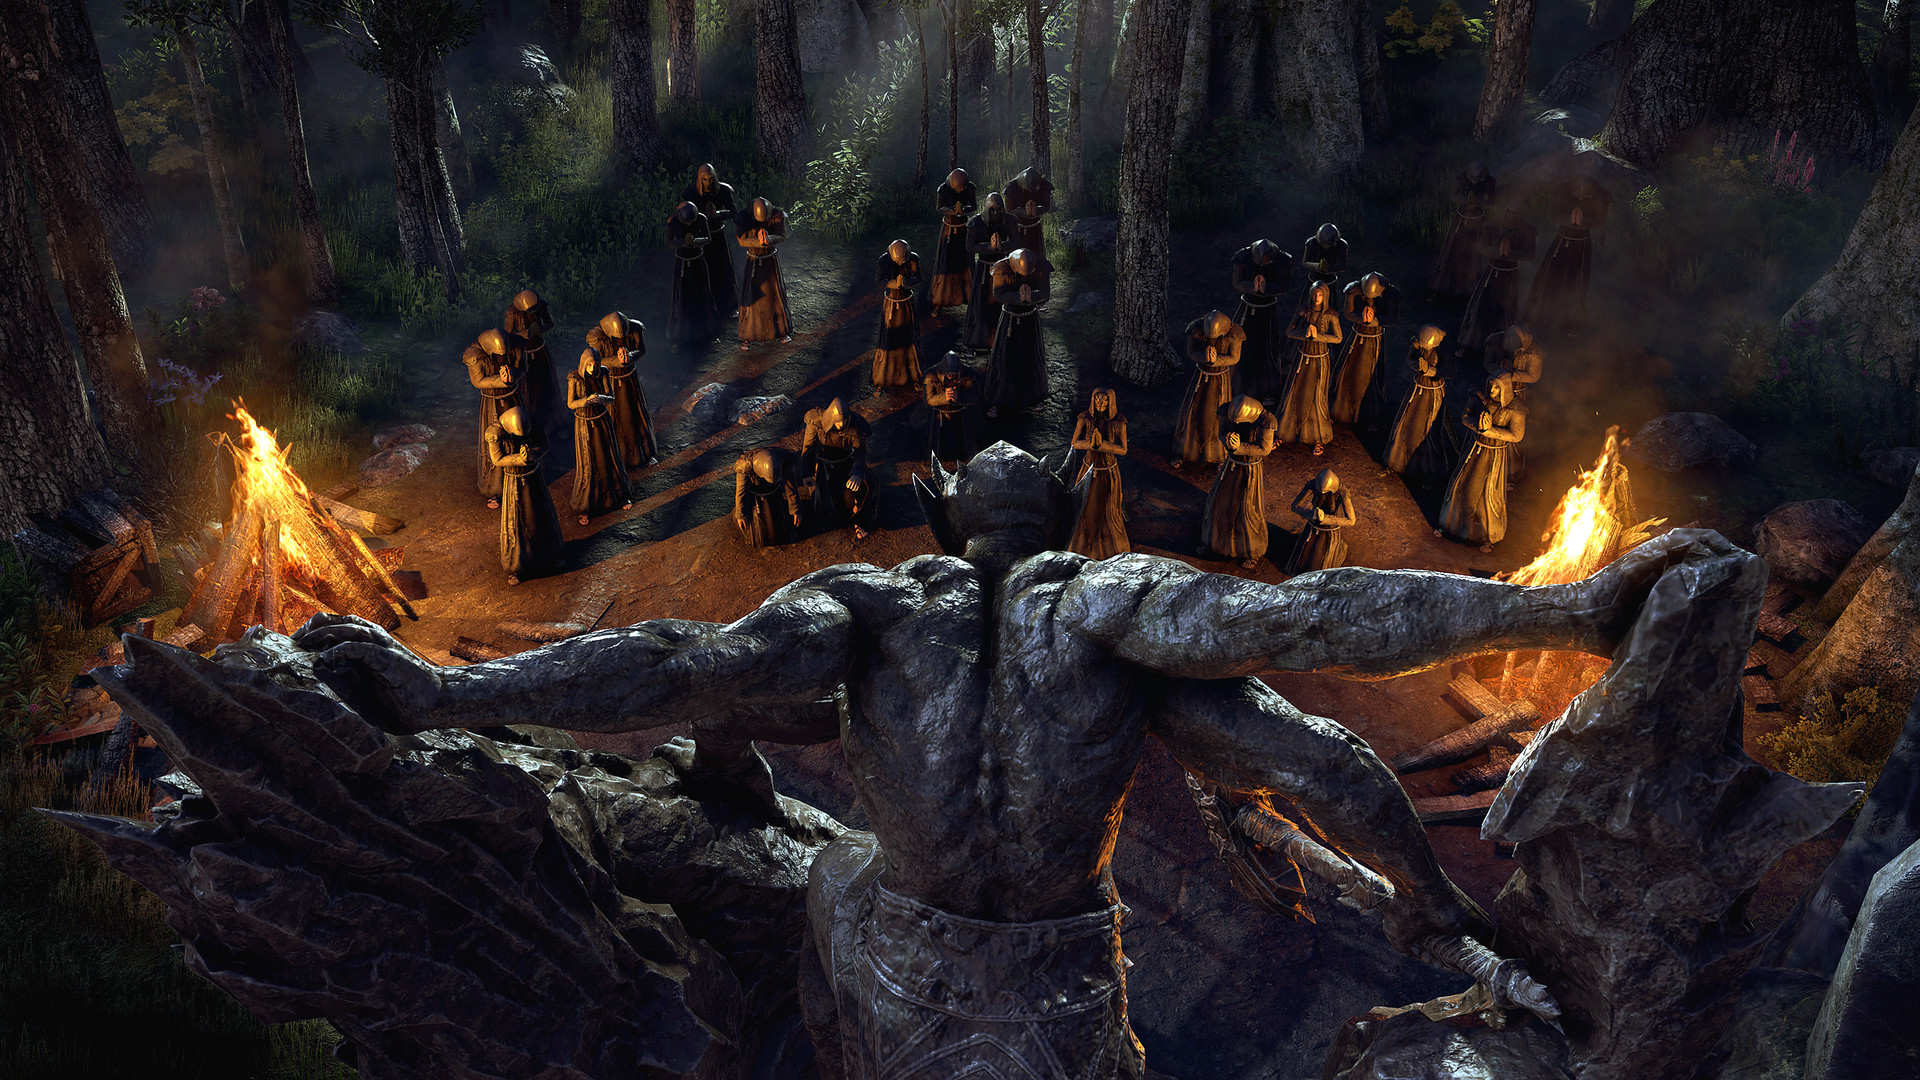 The Elder Scrolls Online - Blackwood alvast kopen op Steam